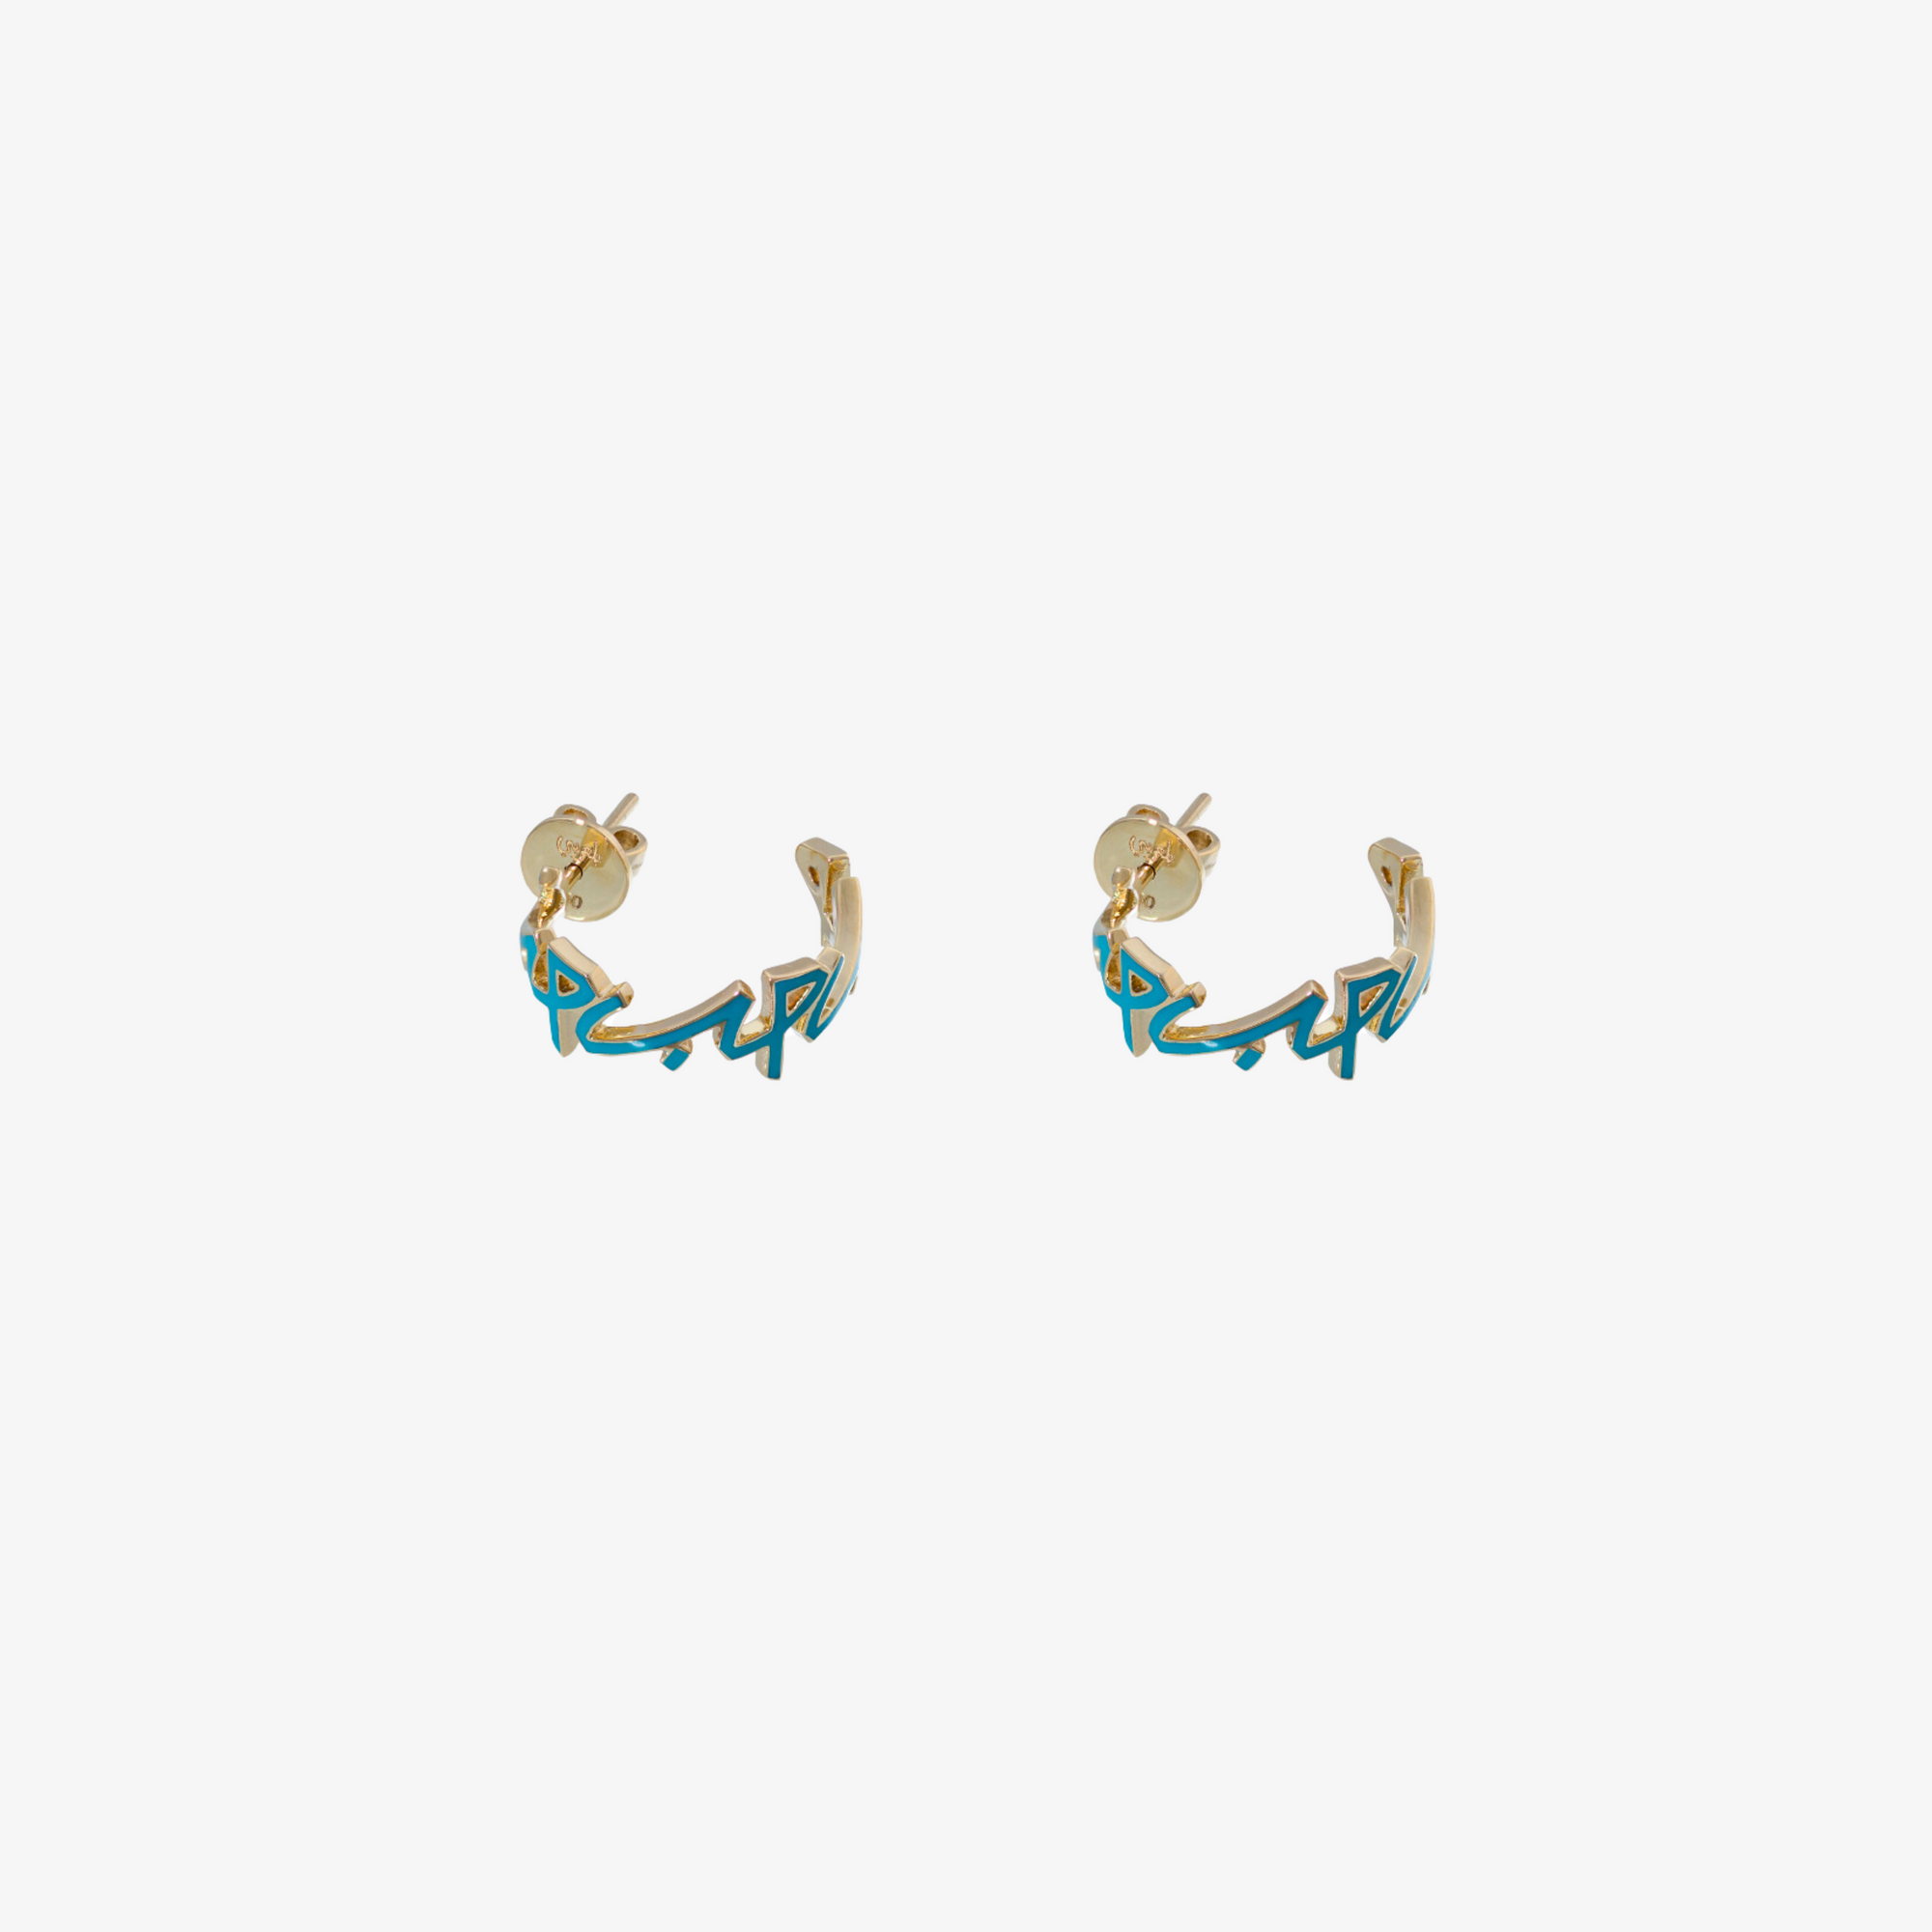 HOBB - Gold & Enamel "Love" Earrings